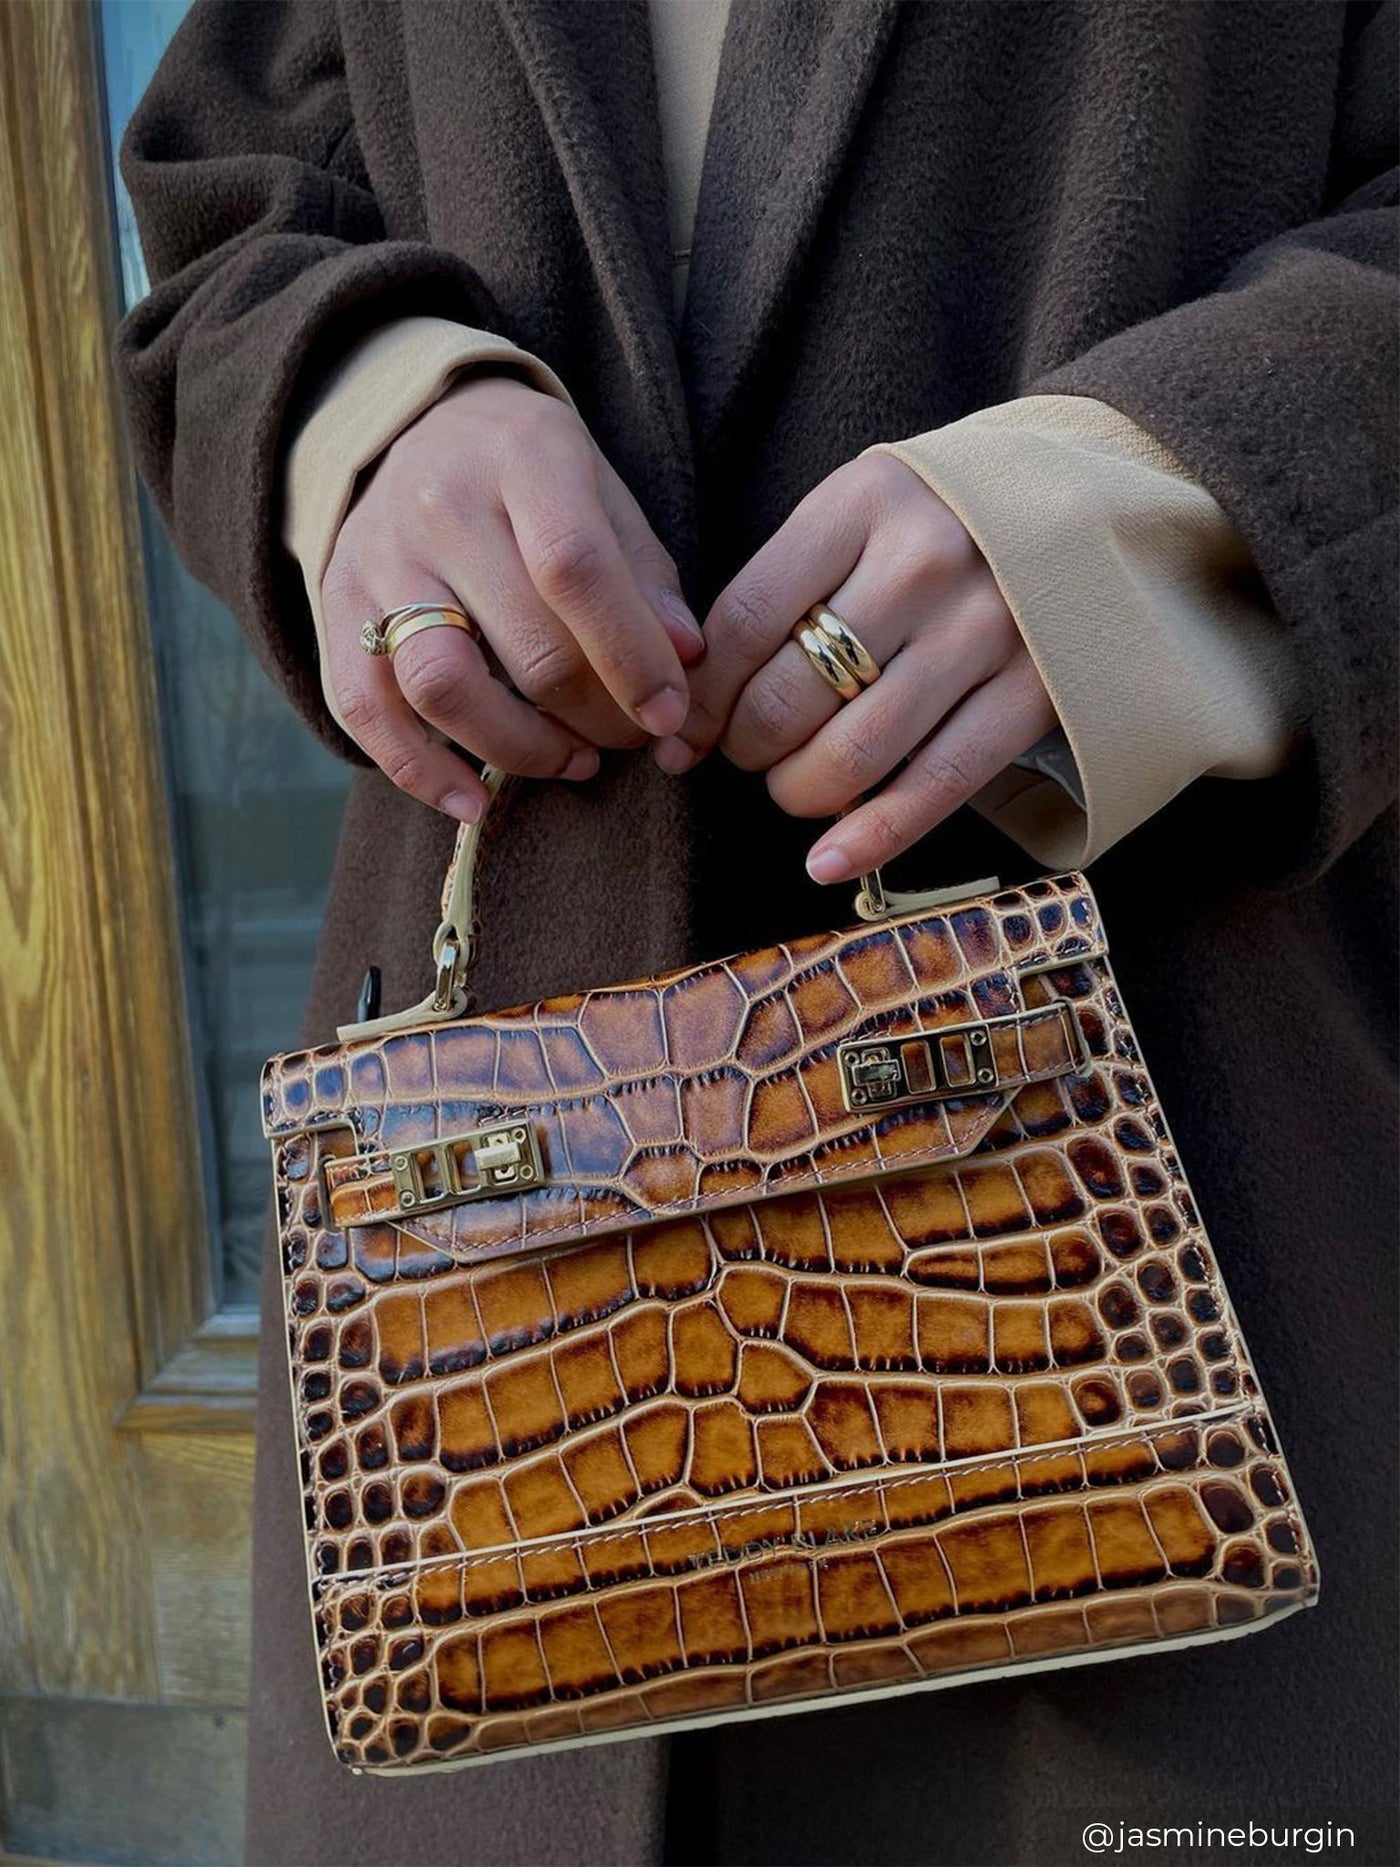 HERMES. Bag in grained leather Togo brown. Model TSAKO. …